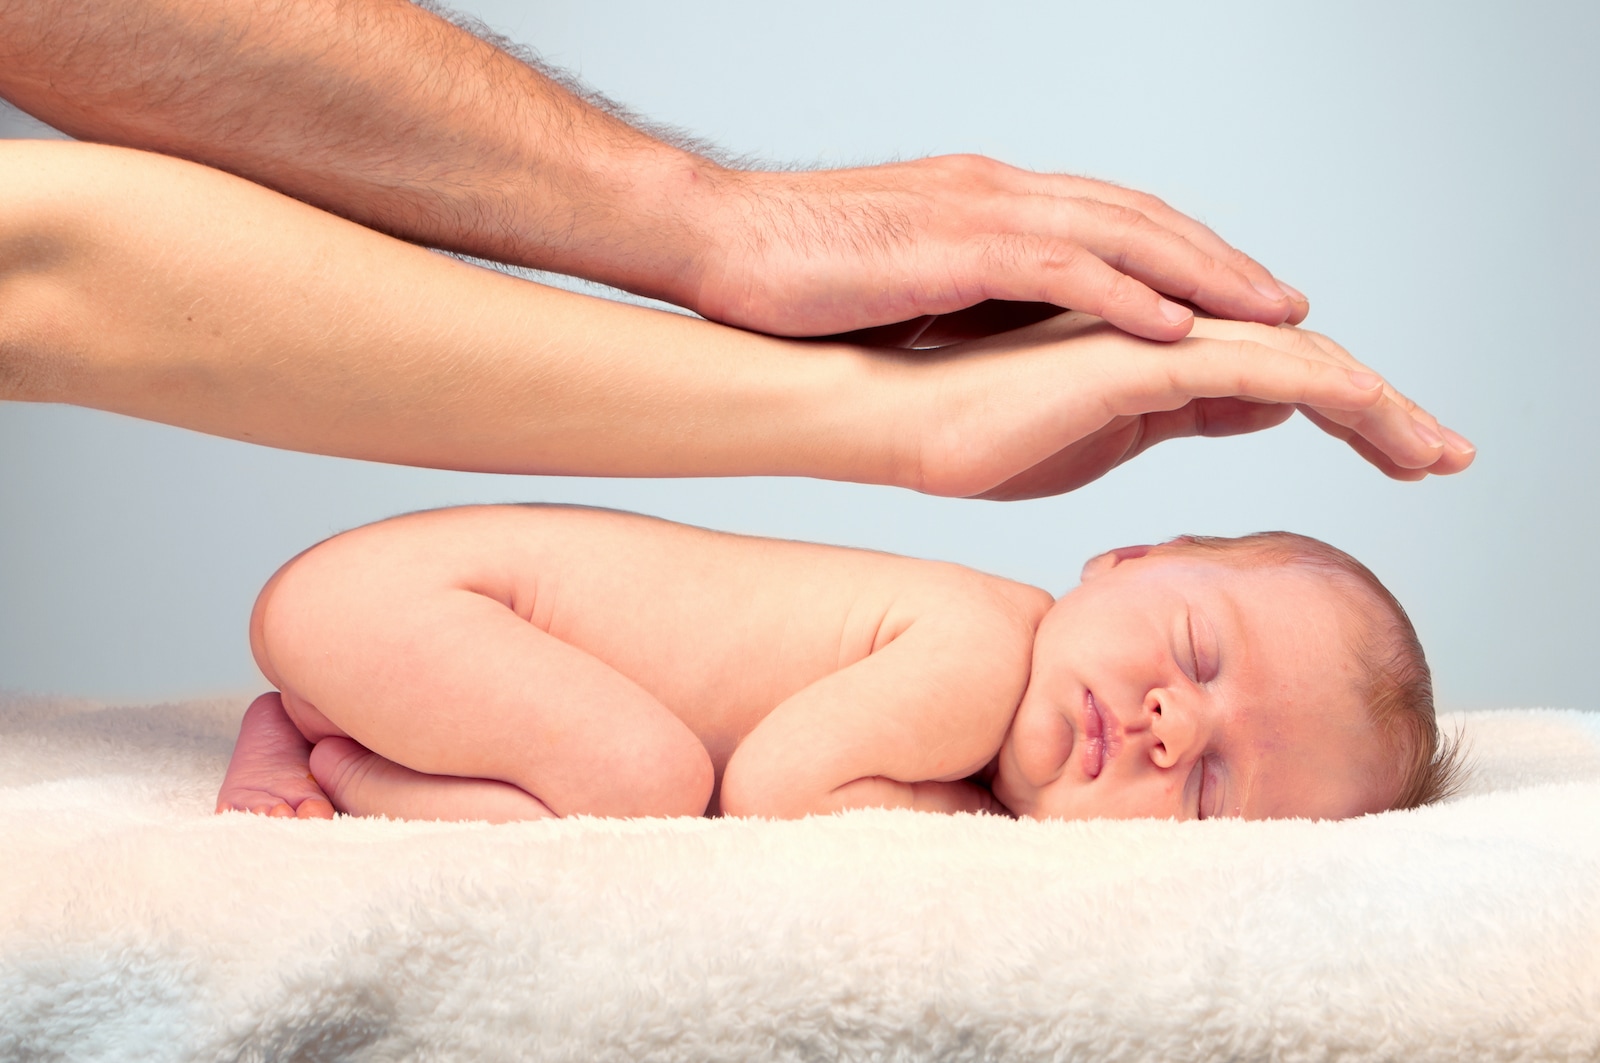 Cresterea si dezvoltarea normala in primul an al bebelusului